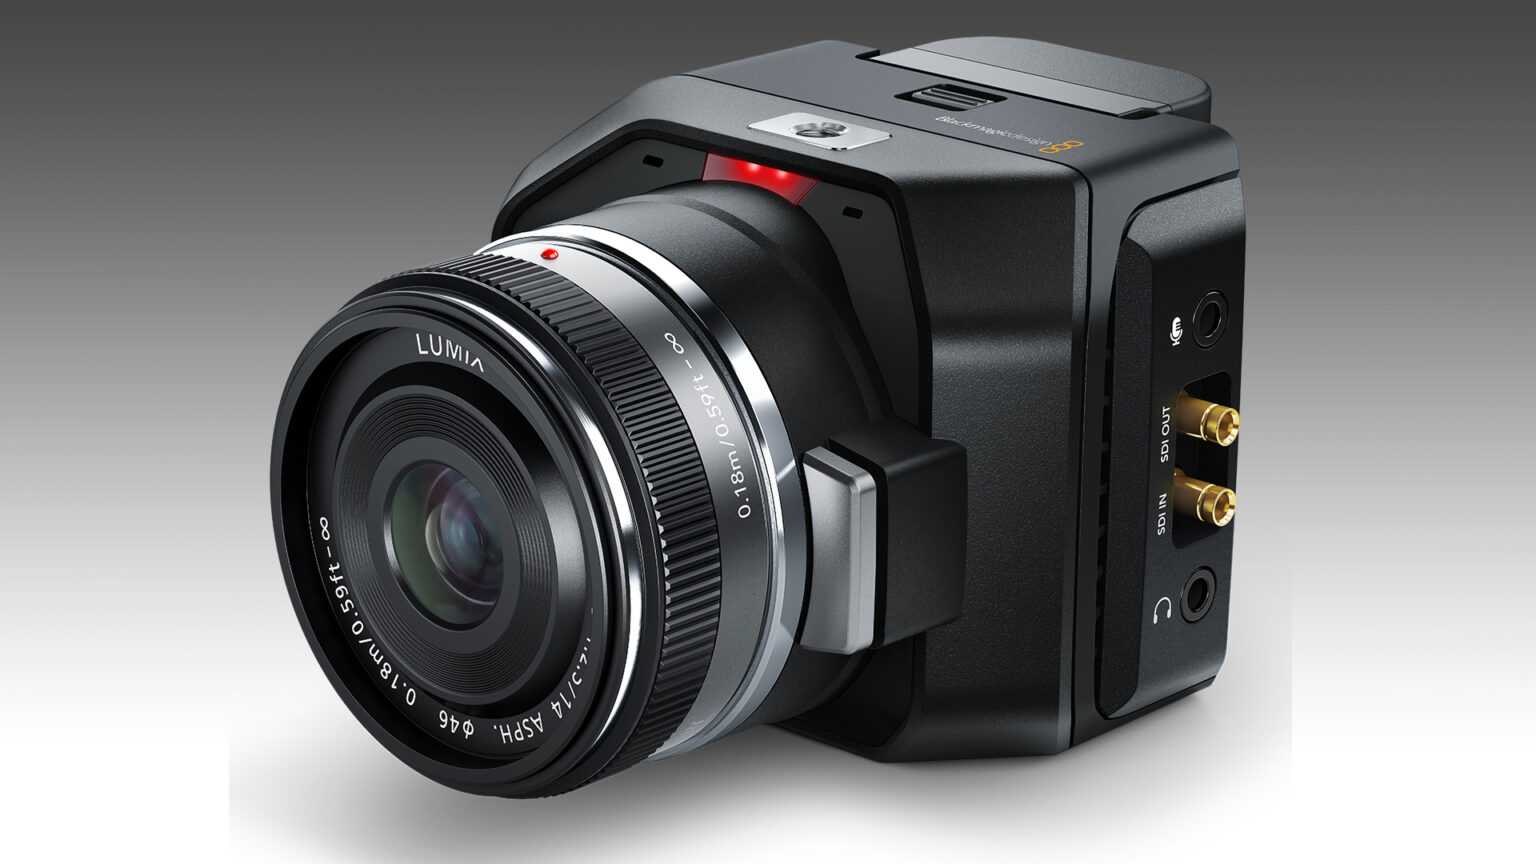 Видеокамера Blackmagic Camera 4K - подробные характеристики обзоры видео фото Цены в интернет-магазинах где можно купить видеокамеру Blackmagic Camera 4K